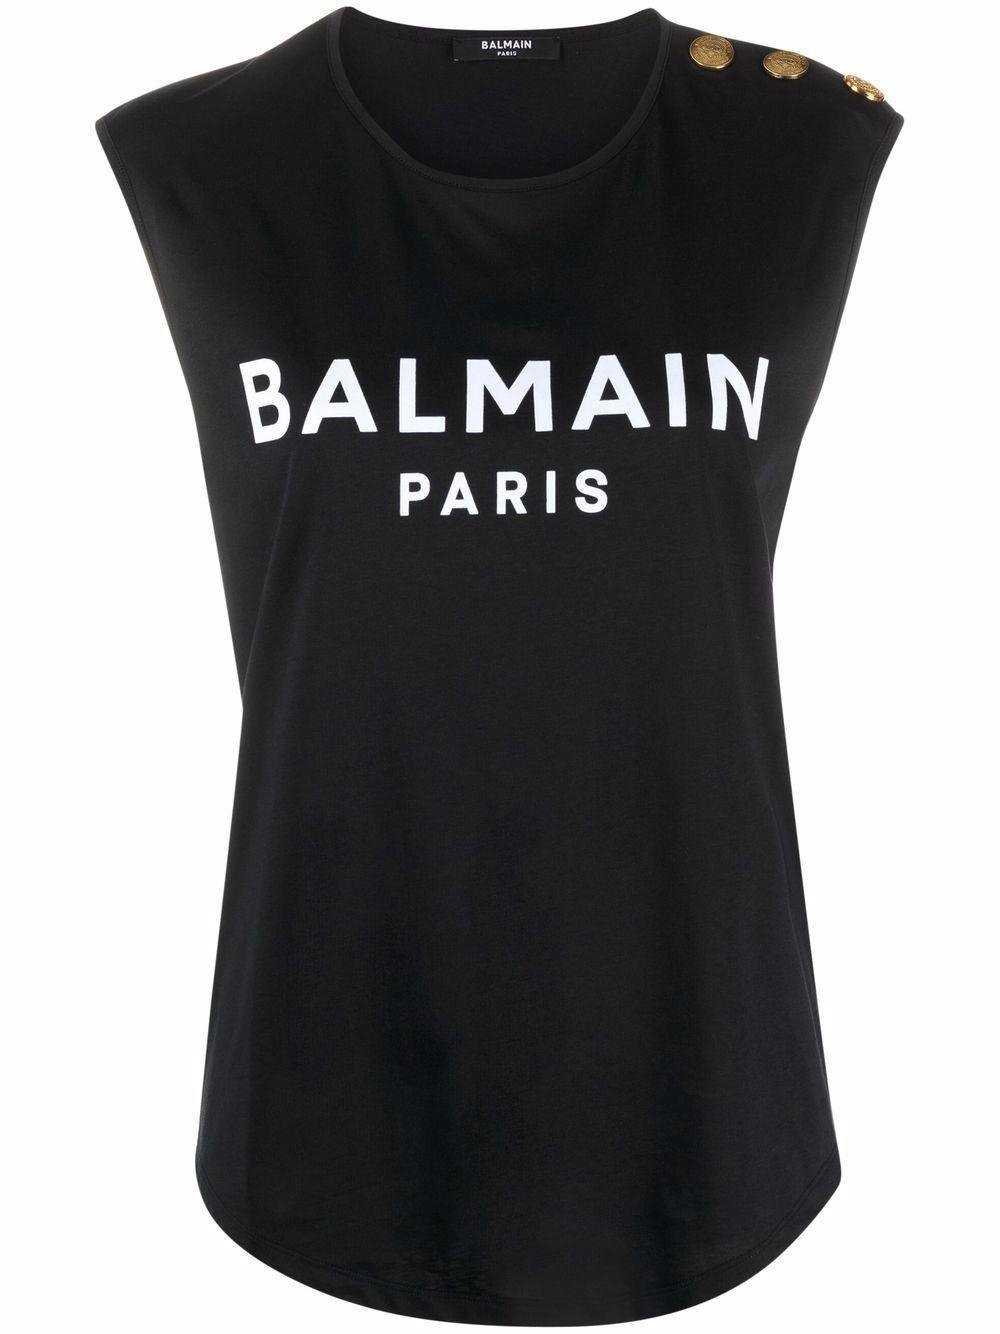 BALMAIN BLACK TANK TOP - Fashion Quality Boutik